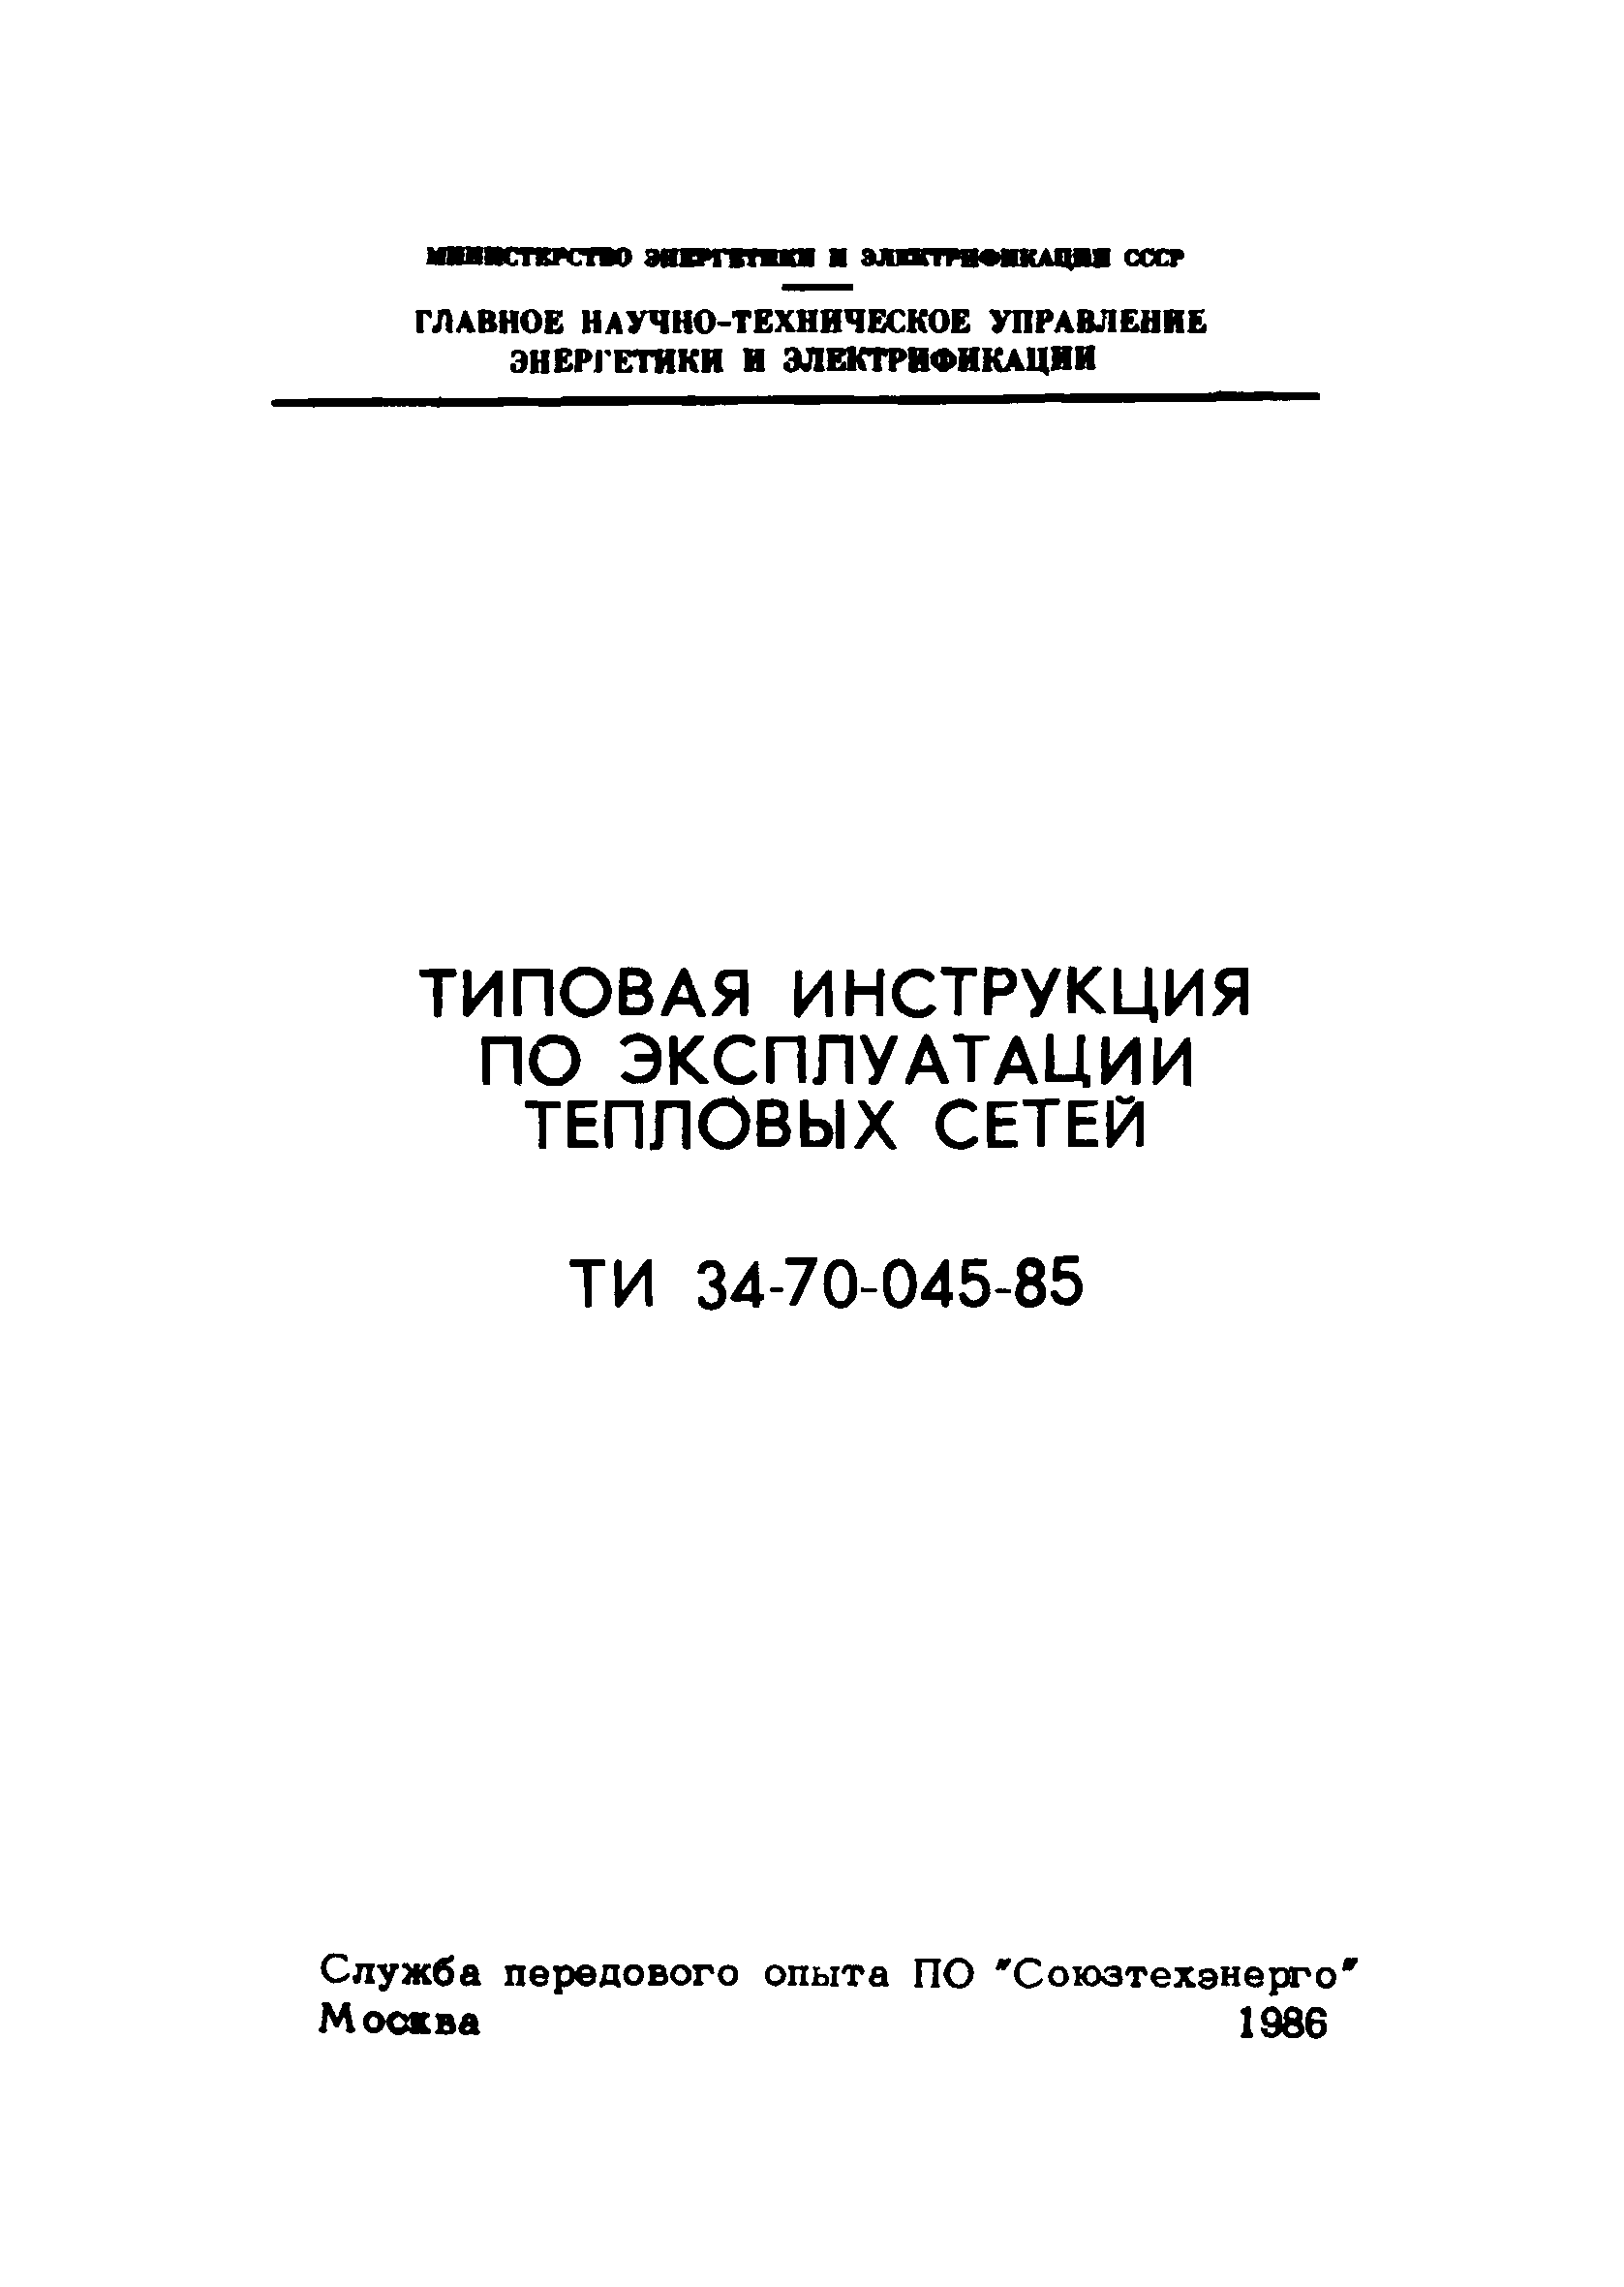 Скачать ТИ 34-70-045-85 Типовая Инструкция По Эксплуатации.